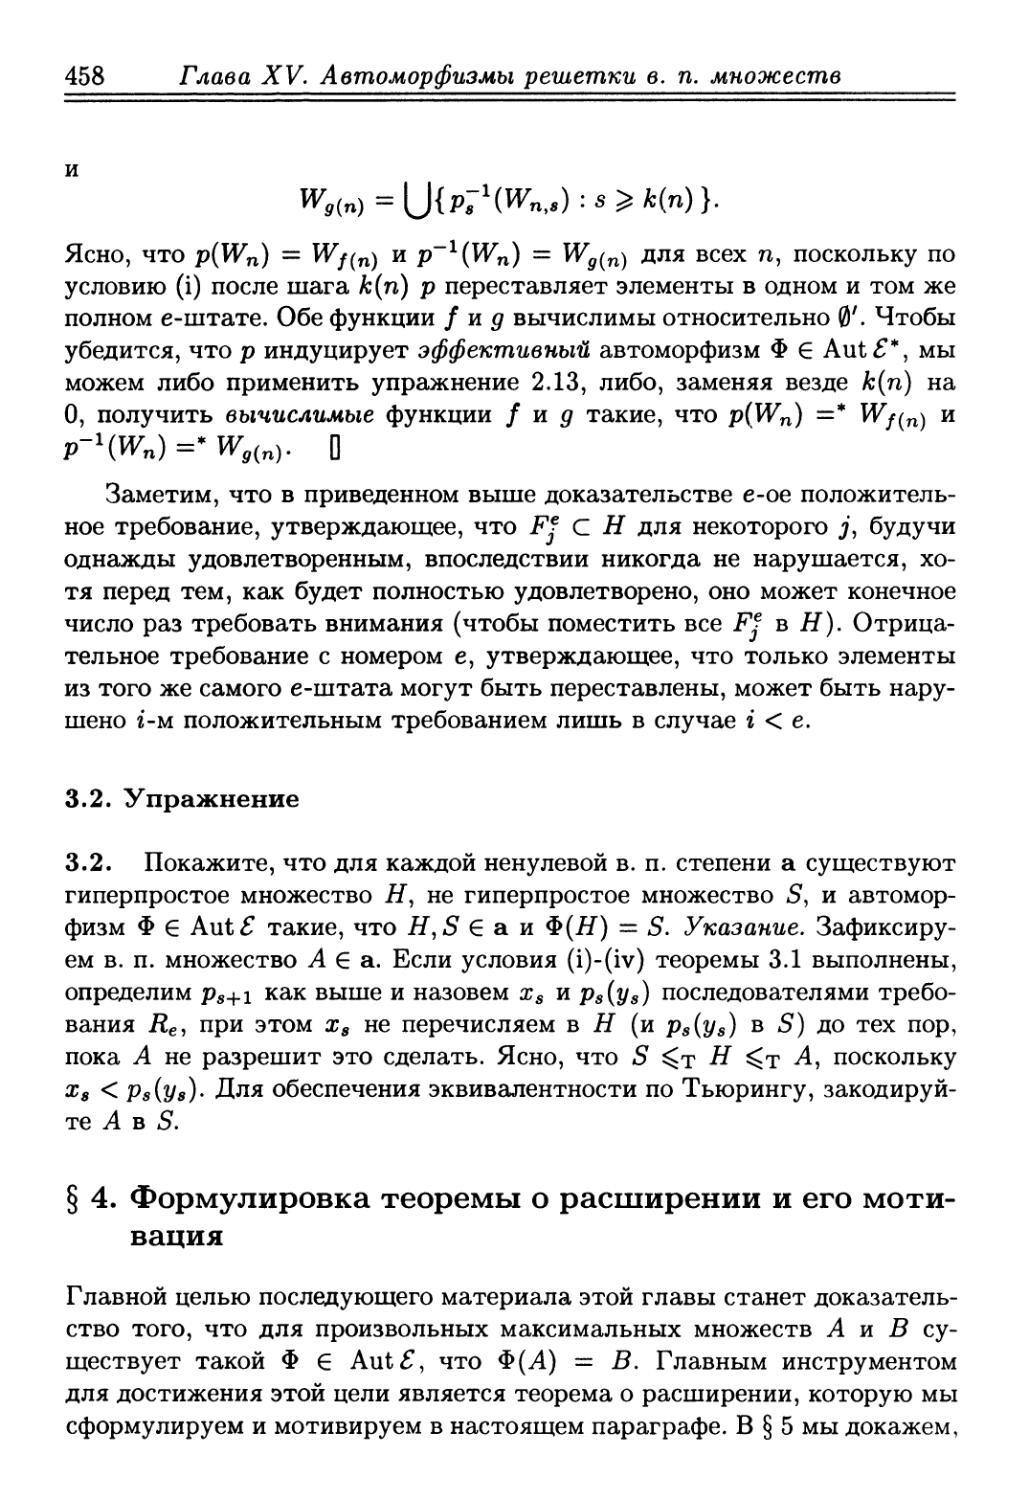 § 4. Формулировка теоремы о расширении и его мотивация